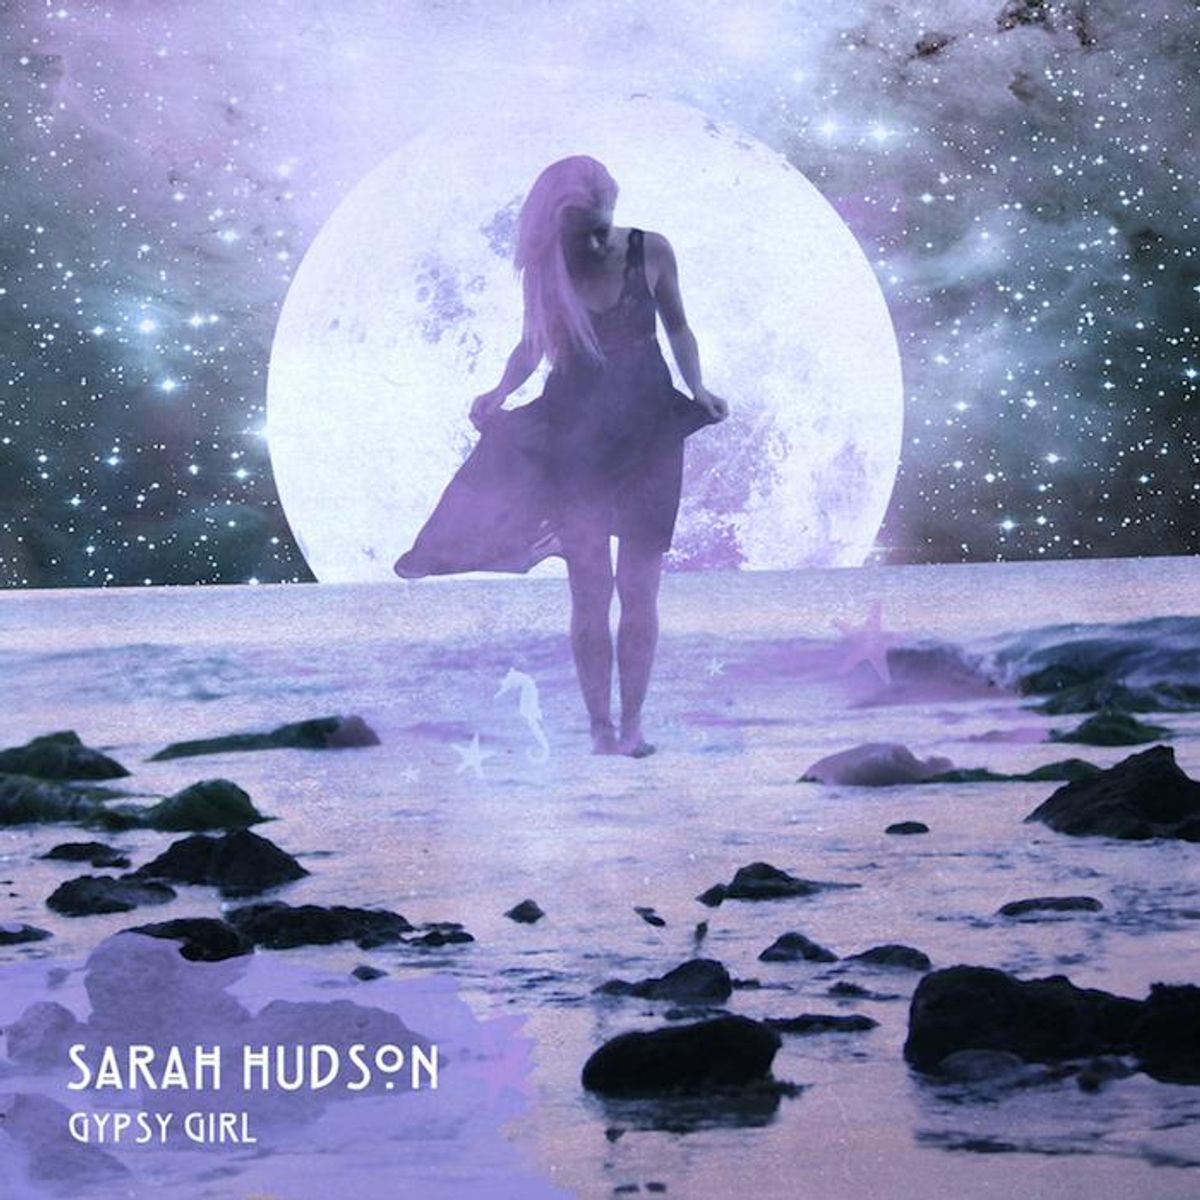 Sarah Hudson